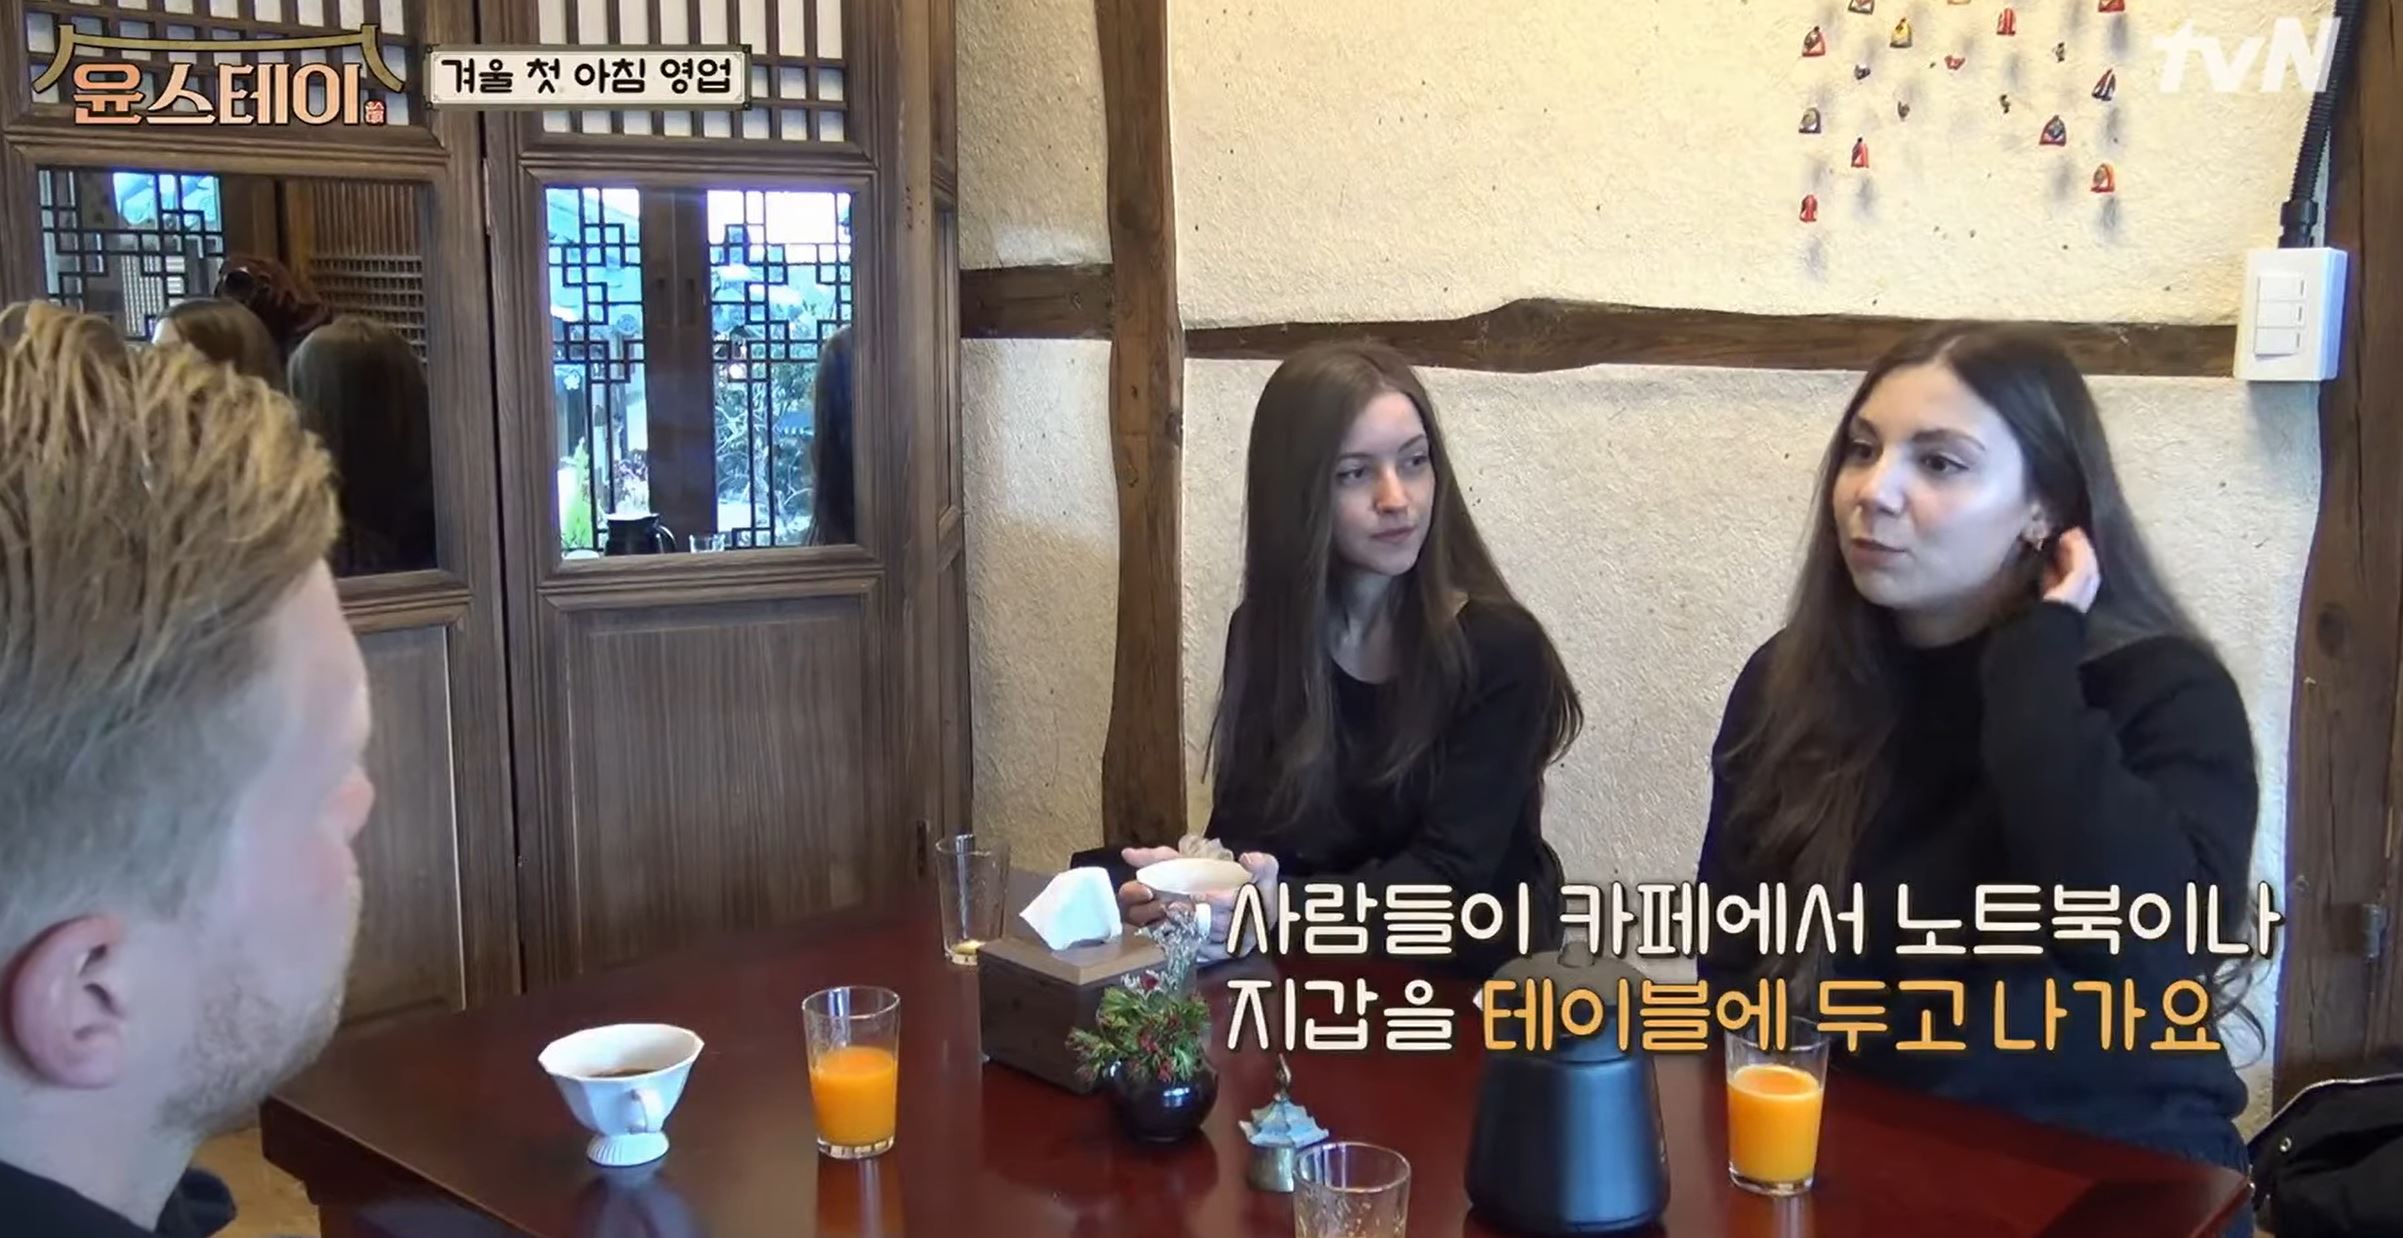 한국인의 양심문화에 대해 이야기하는 외국인들. tvN ‘윤스테이’ 화면 캡처